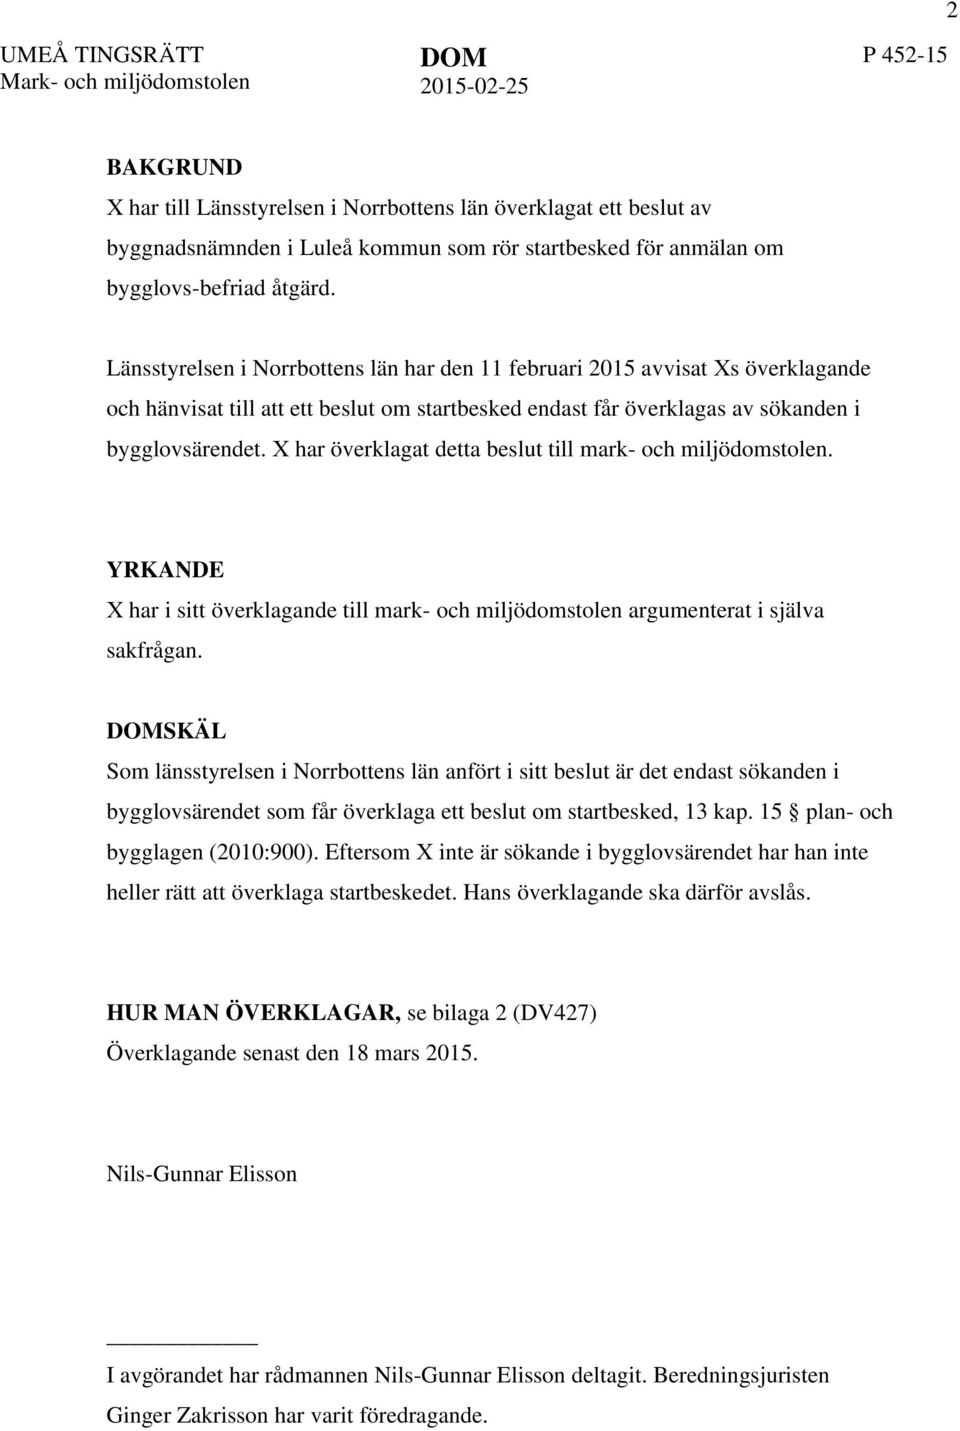 Länsstyrelsen i Norrbottens län har den 11 februari 2015 avvisat Xs överklagande och hänvisat till att ett beslut om startbesked endast får överklagas av sökanden i bygglovsärendet.